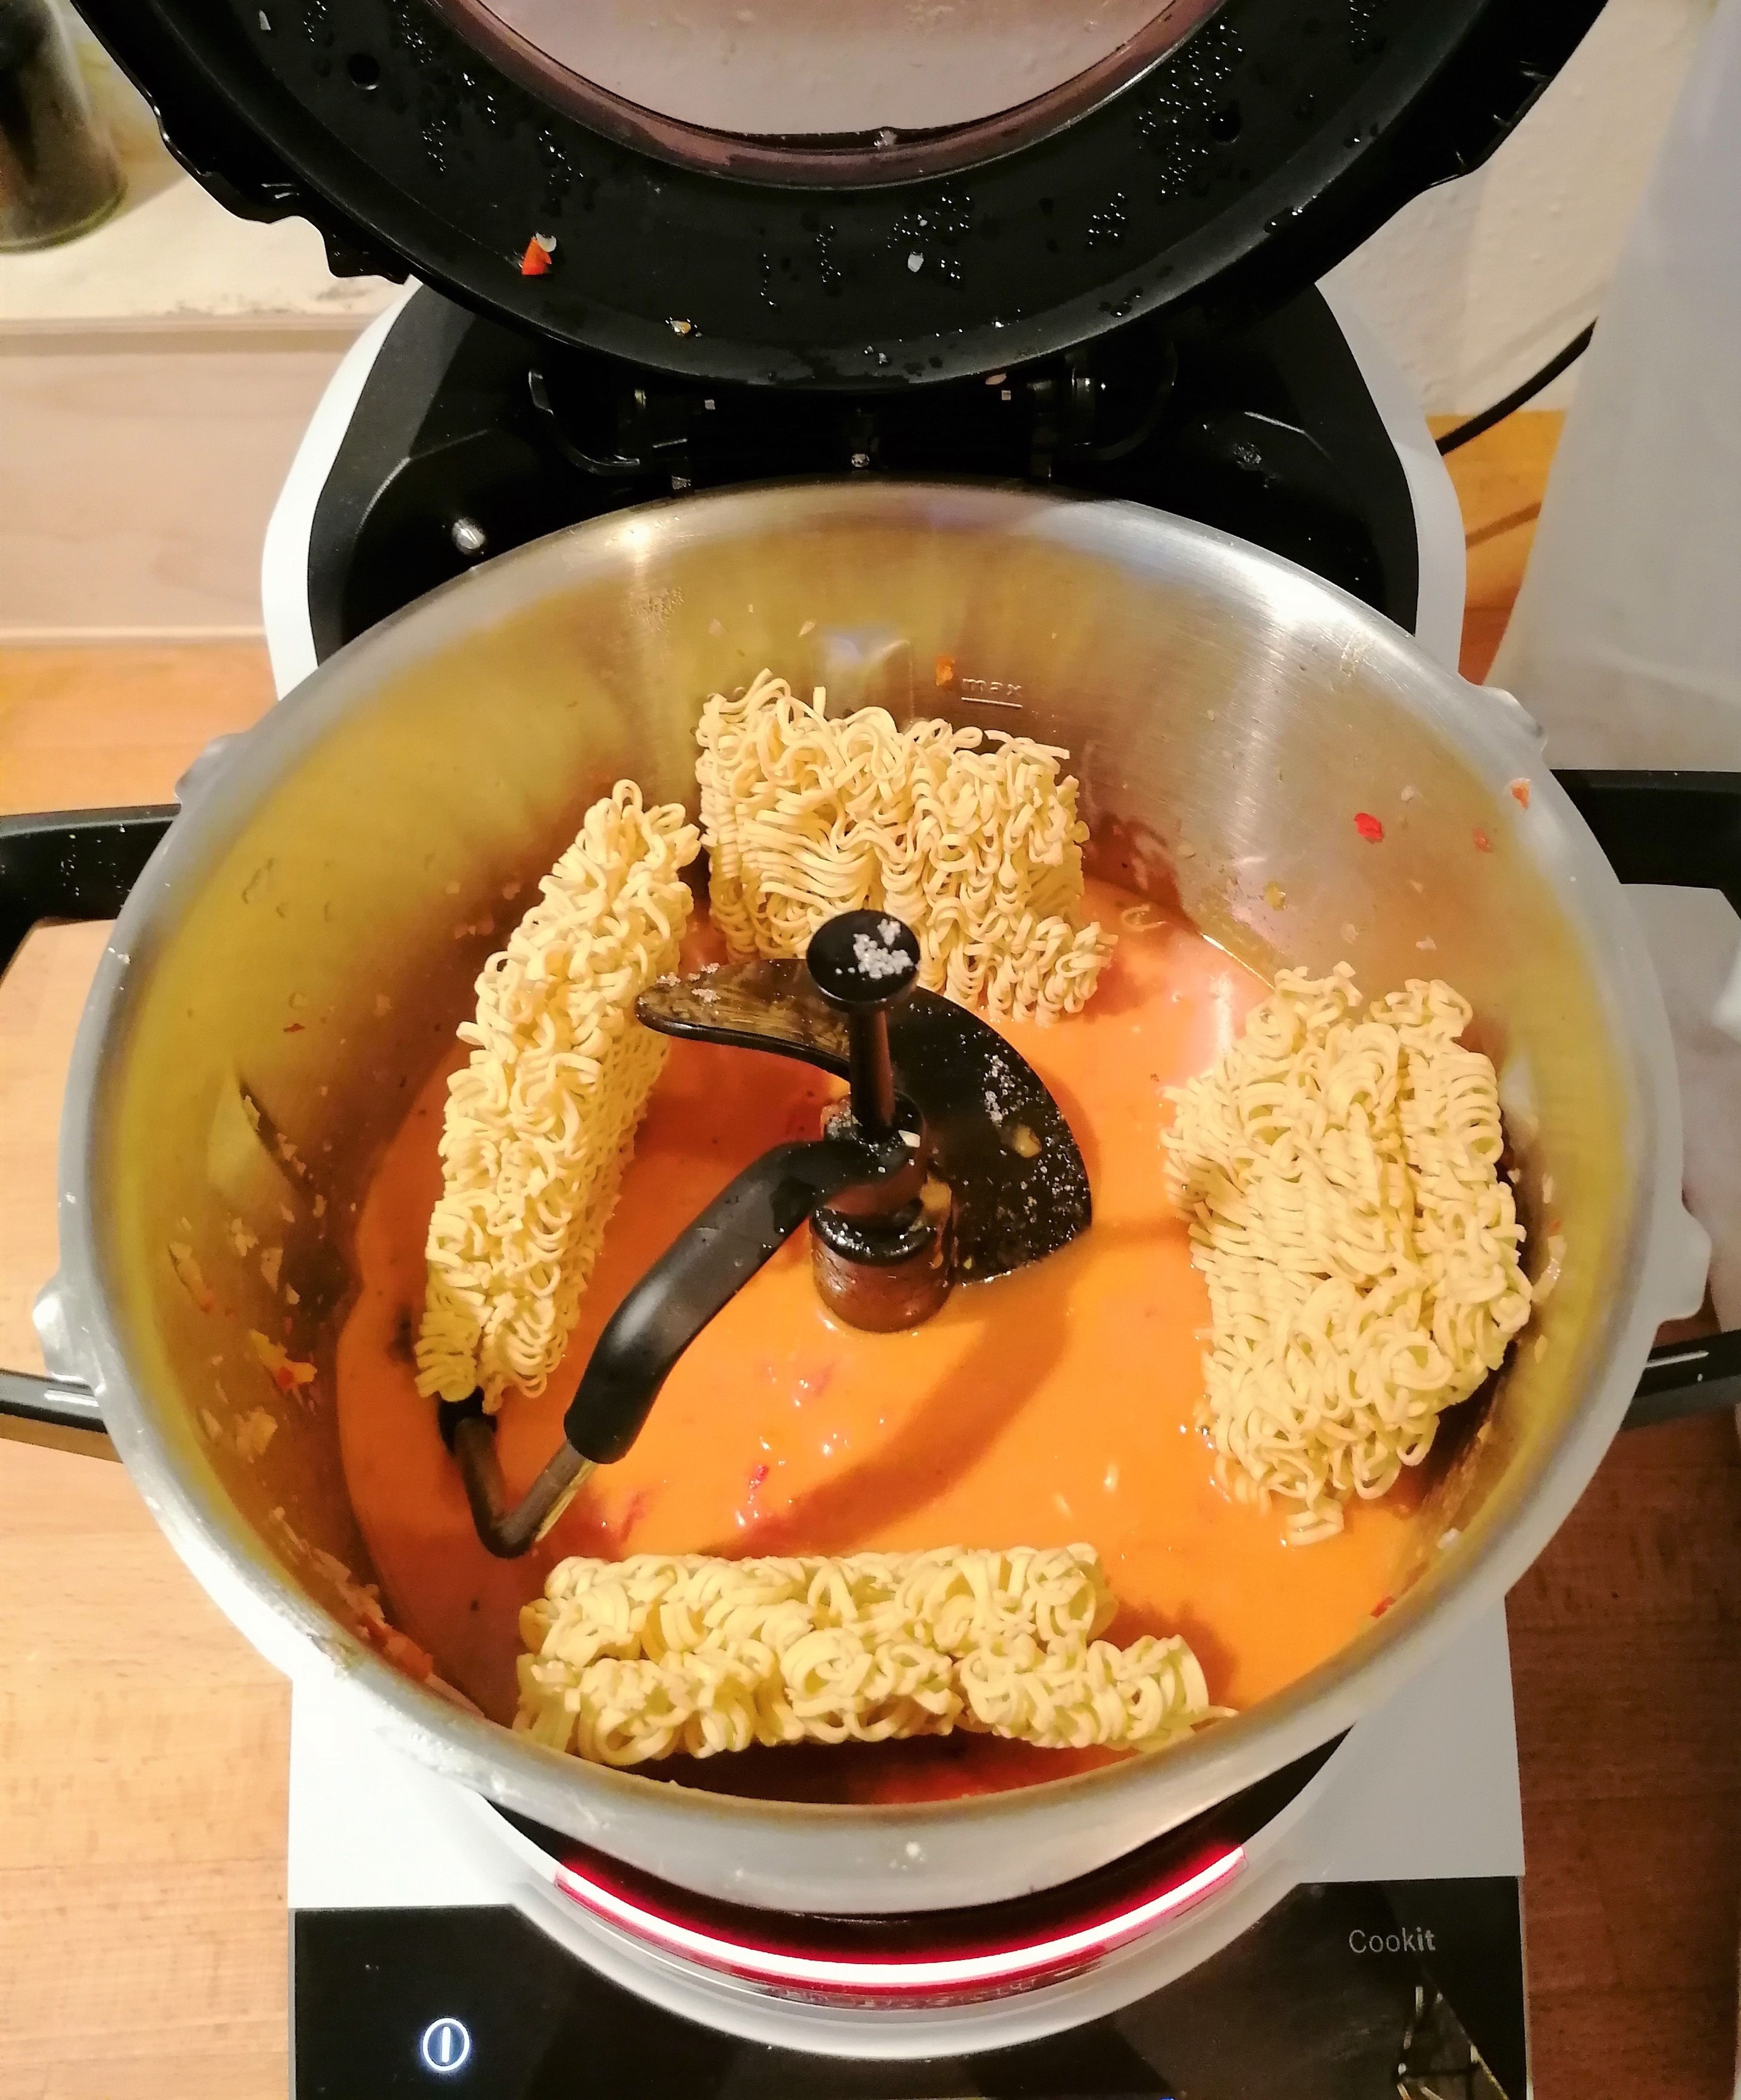 Den 3D-Rührer einsetzen. Das Kokosöl und die Currypaste dazugeben, Deckel schließen, Messbecher entfernen und das Gemüse im Cookit anschwitzen (3D-Rührer | Stufe 4 | 120°C | 4 Min.). Die Tomaten, Chiliflocken, Salz, Rohrzucker, Saft einer Limette, Limettenabrieb und die Kokosmilch dazugeben, den Deckel ohne Messbecher schließen und erhitzen und köcheln lassen (3D-Rührer | Stufe 4 | 95°C | 15 Min.). Die Mie-Nudeln dazugeben und weiter bei geschlossenem Deckel, ohne Messbecher, köcheln lassen (3D-Rührer | Stufe 4 | 95°C | 2 Min.). Anschließend die Garnelen dazugeben und weiter bei geschlossenem Deckel, ohne Messbecher, köcheln lassen (3D-Rührer | Stufe 4 | 95°C | 6 Min.).